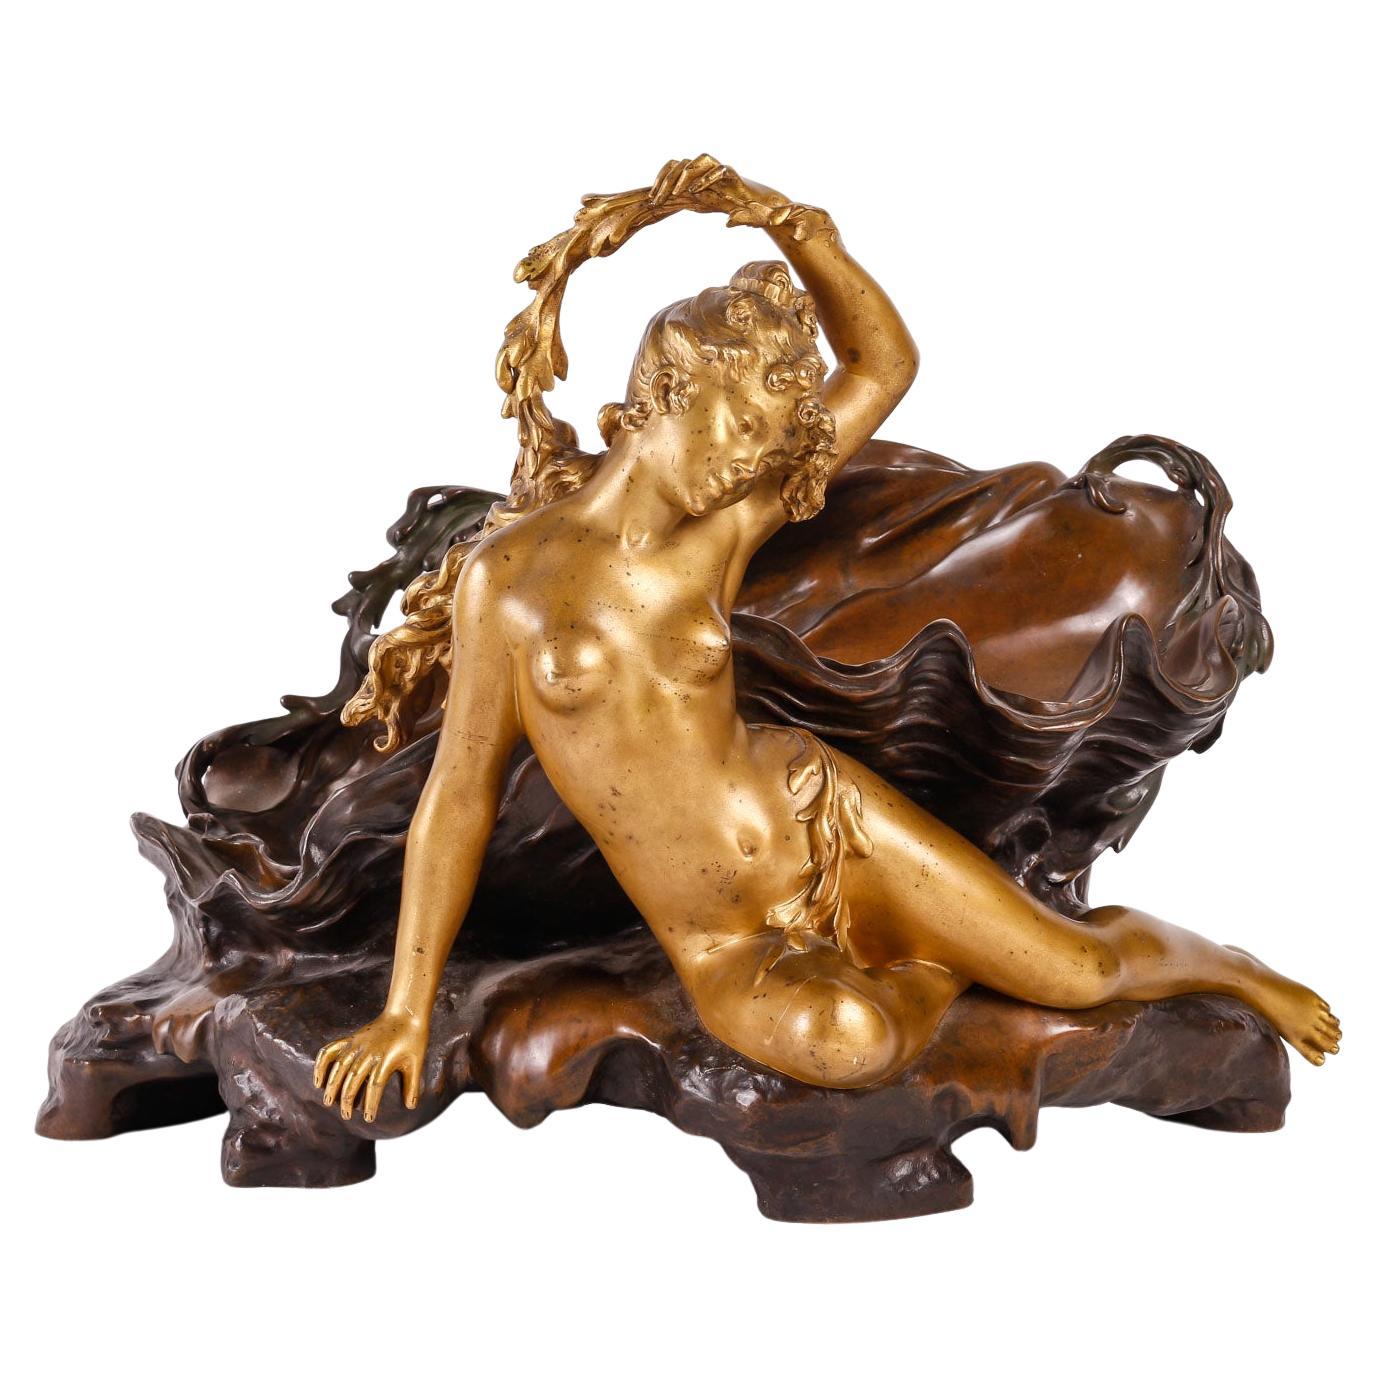 A French Art Nouveau Bronze Vide-Poches by Auguste Moreau (1834-1917)